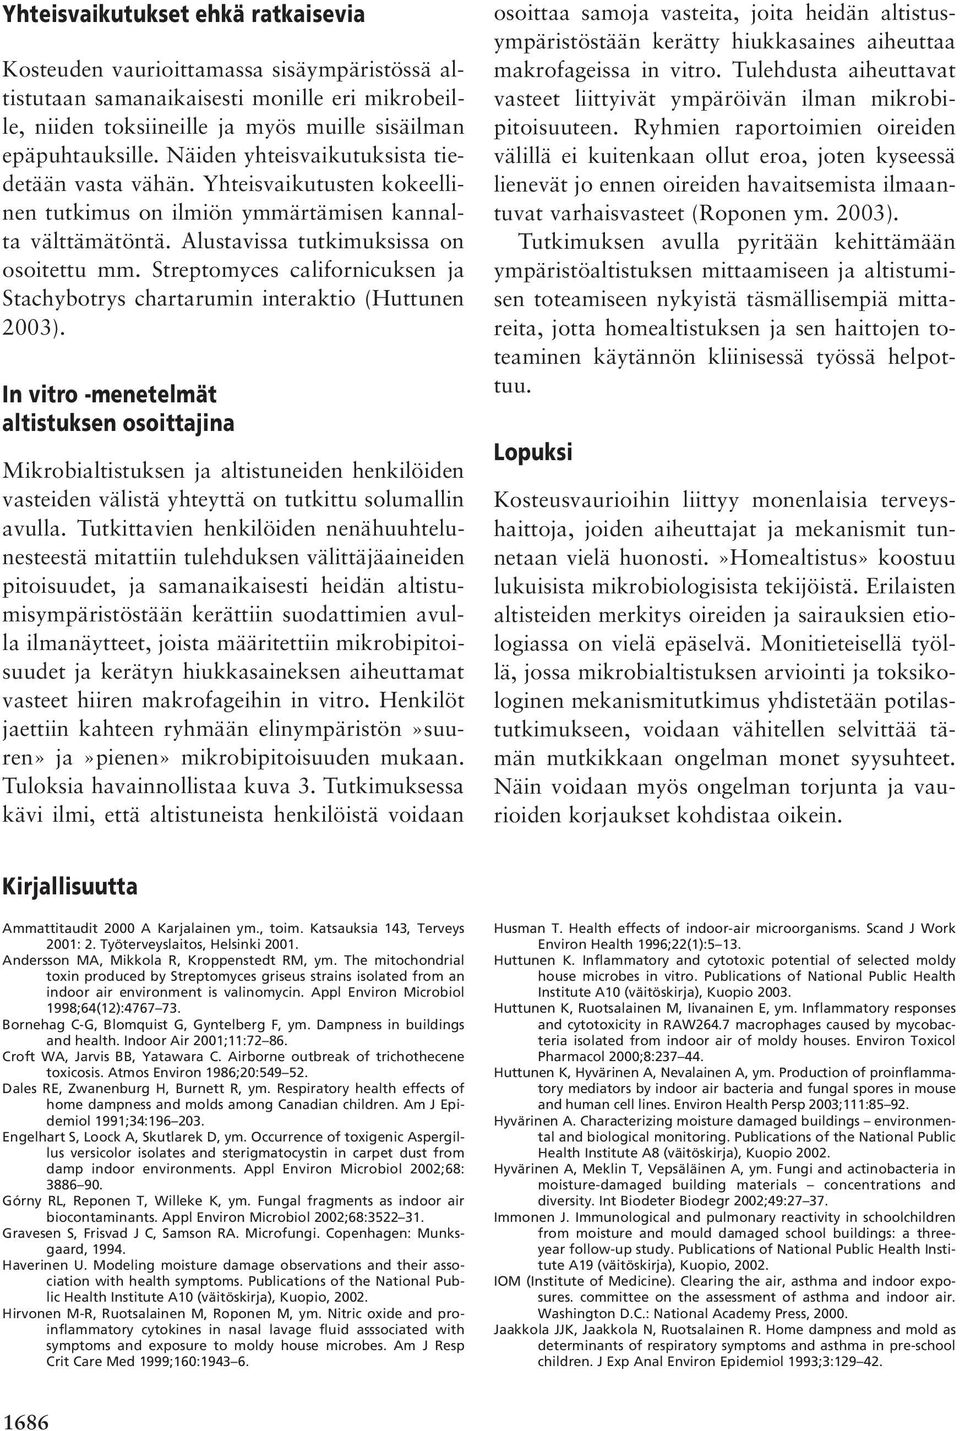 Streptomyces californicuksen ja Stachybotrys chartarumin interaktio (Huttunen 2003).